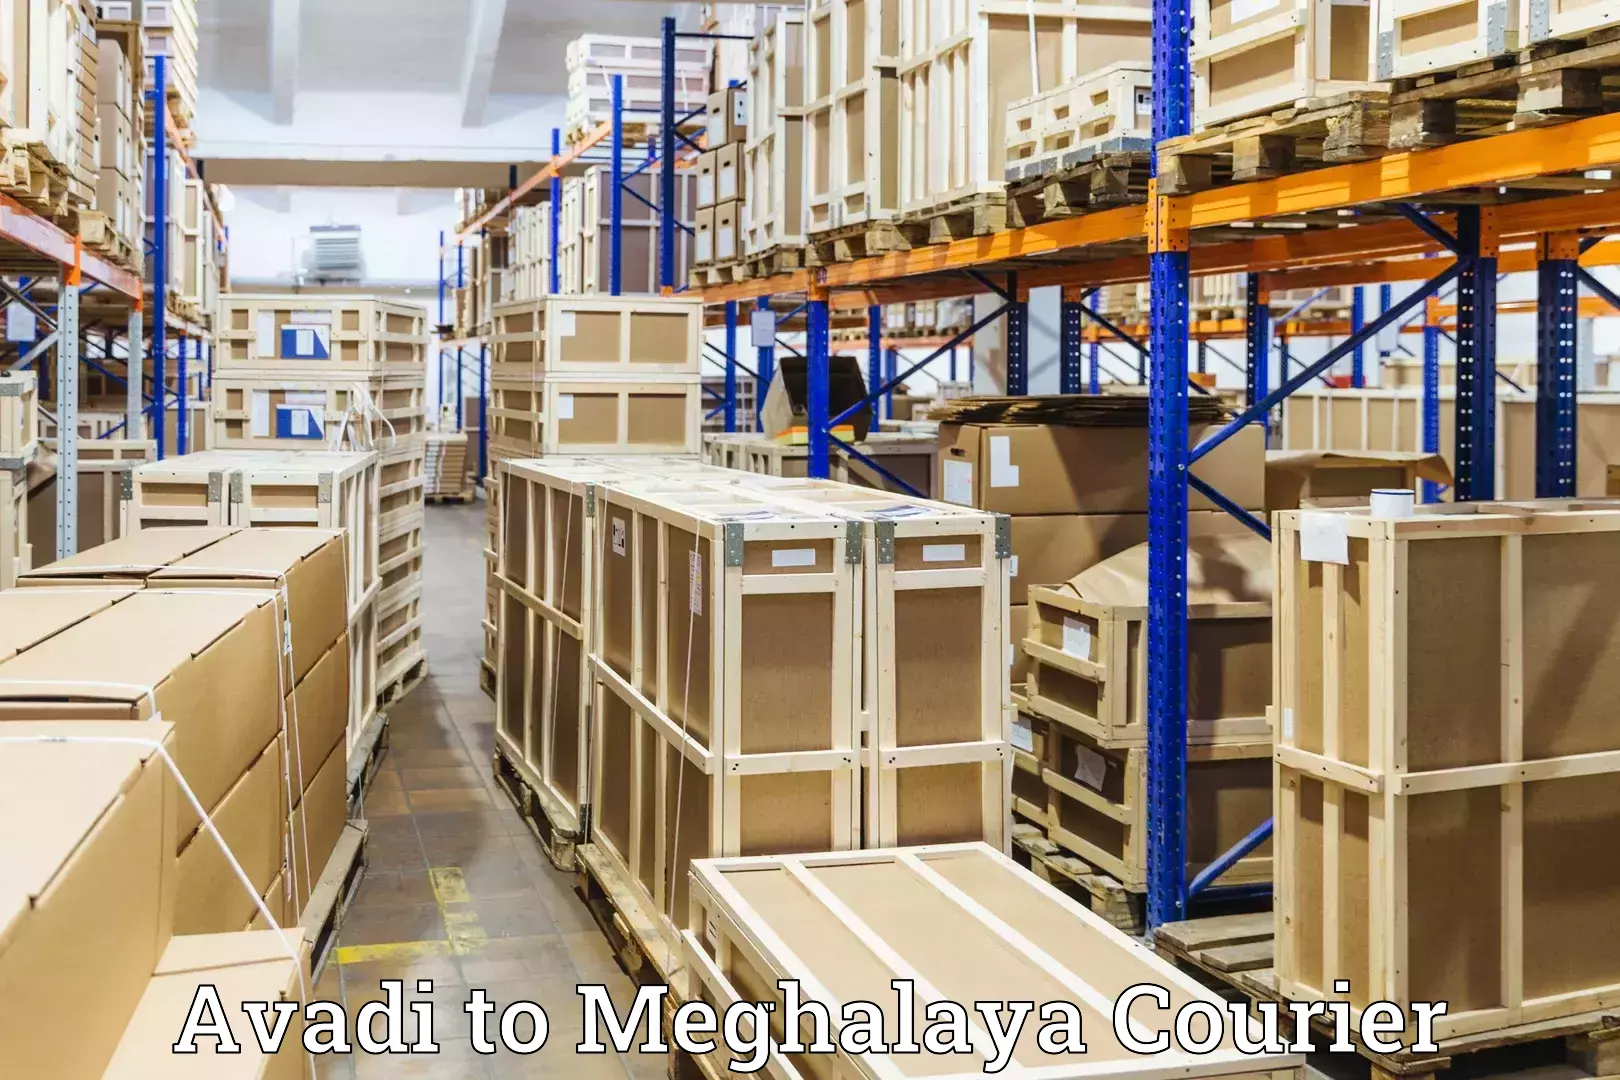 Baggage transport network Avadi to Meghalaya